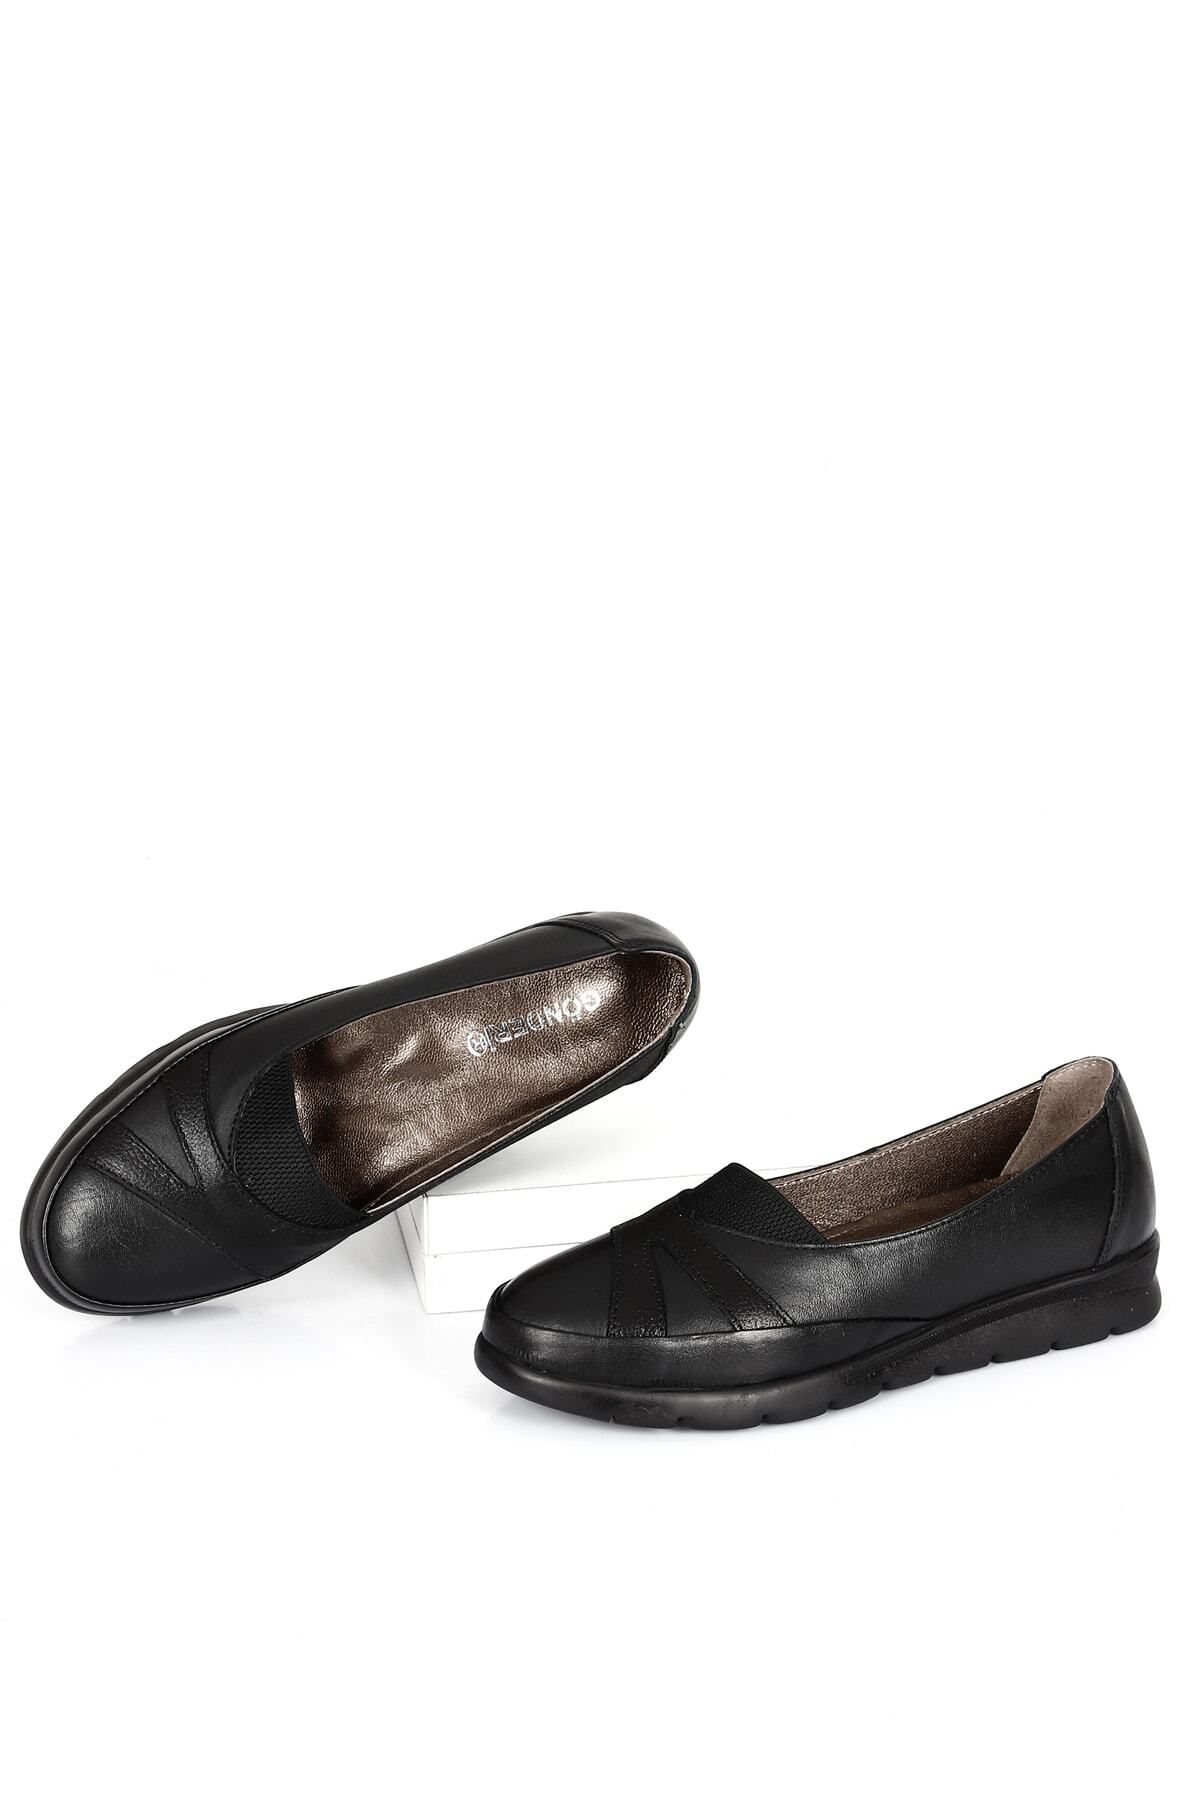 GÖNDERİ(R) Siyah Gön Hakiki Deri Yuvarlak Burun Dolgu Taban Kadın Günlük Ayakkabı 42765